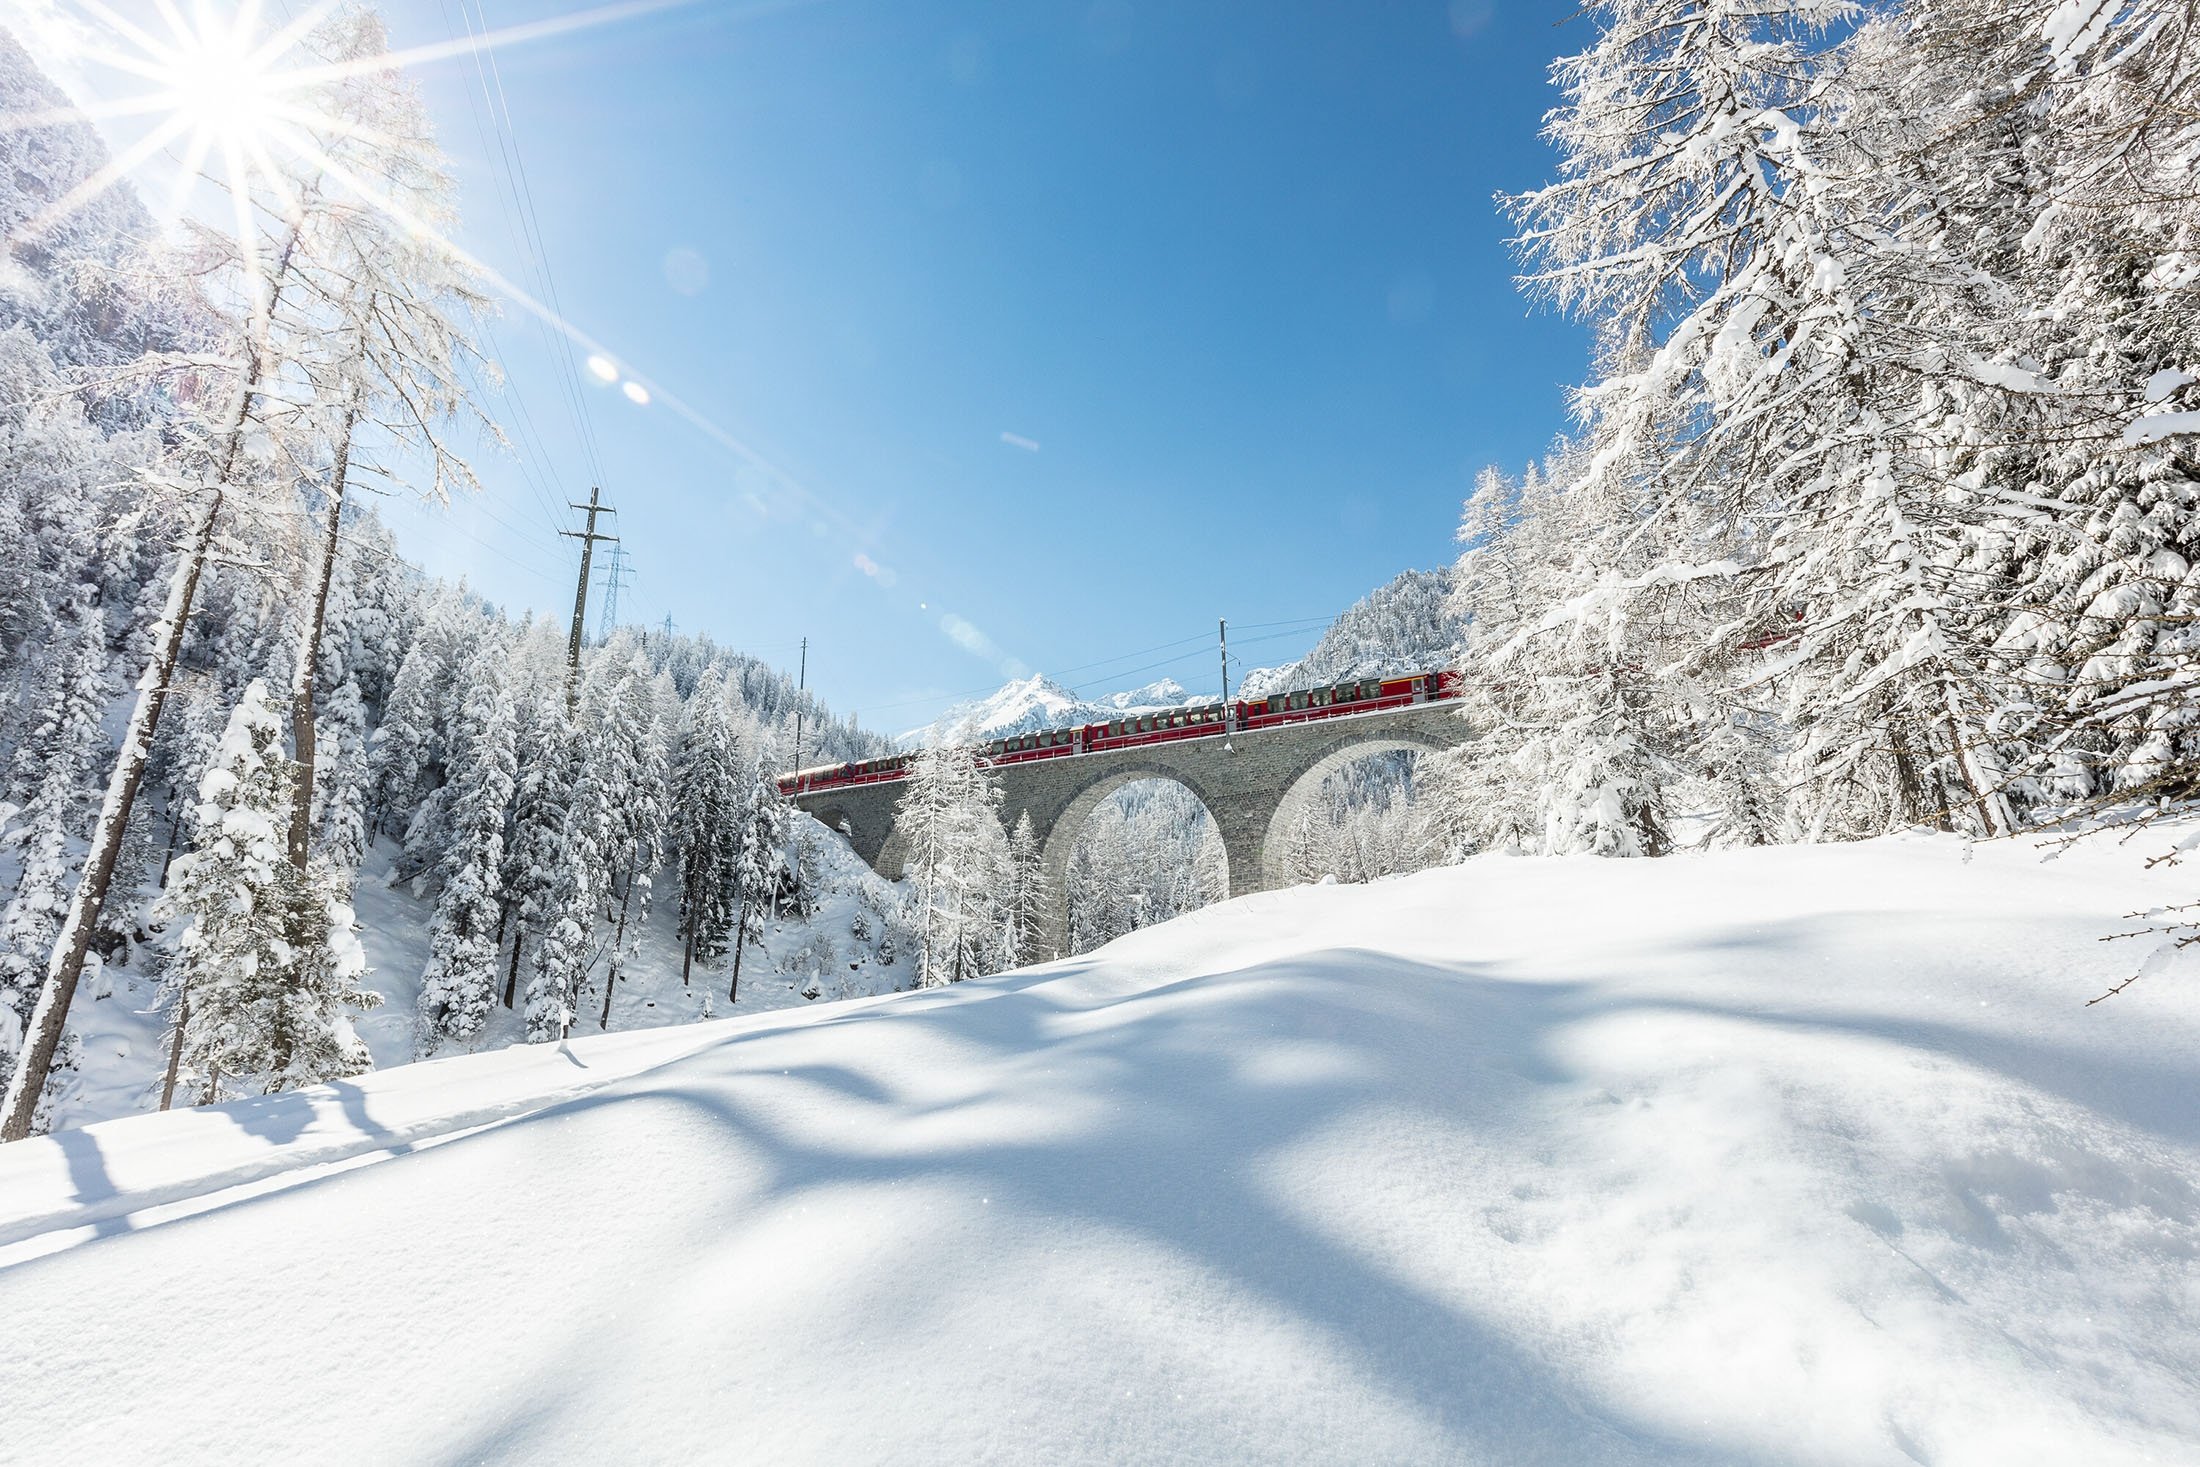 Si vous prenez le train Bernina Express au bon moment, vous serez récompensé par un panorama hivernal féerique.  (Rhatische Bahn via dpa)